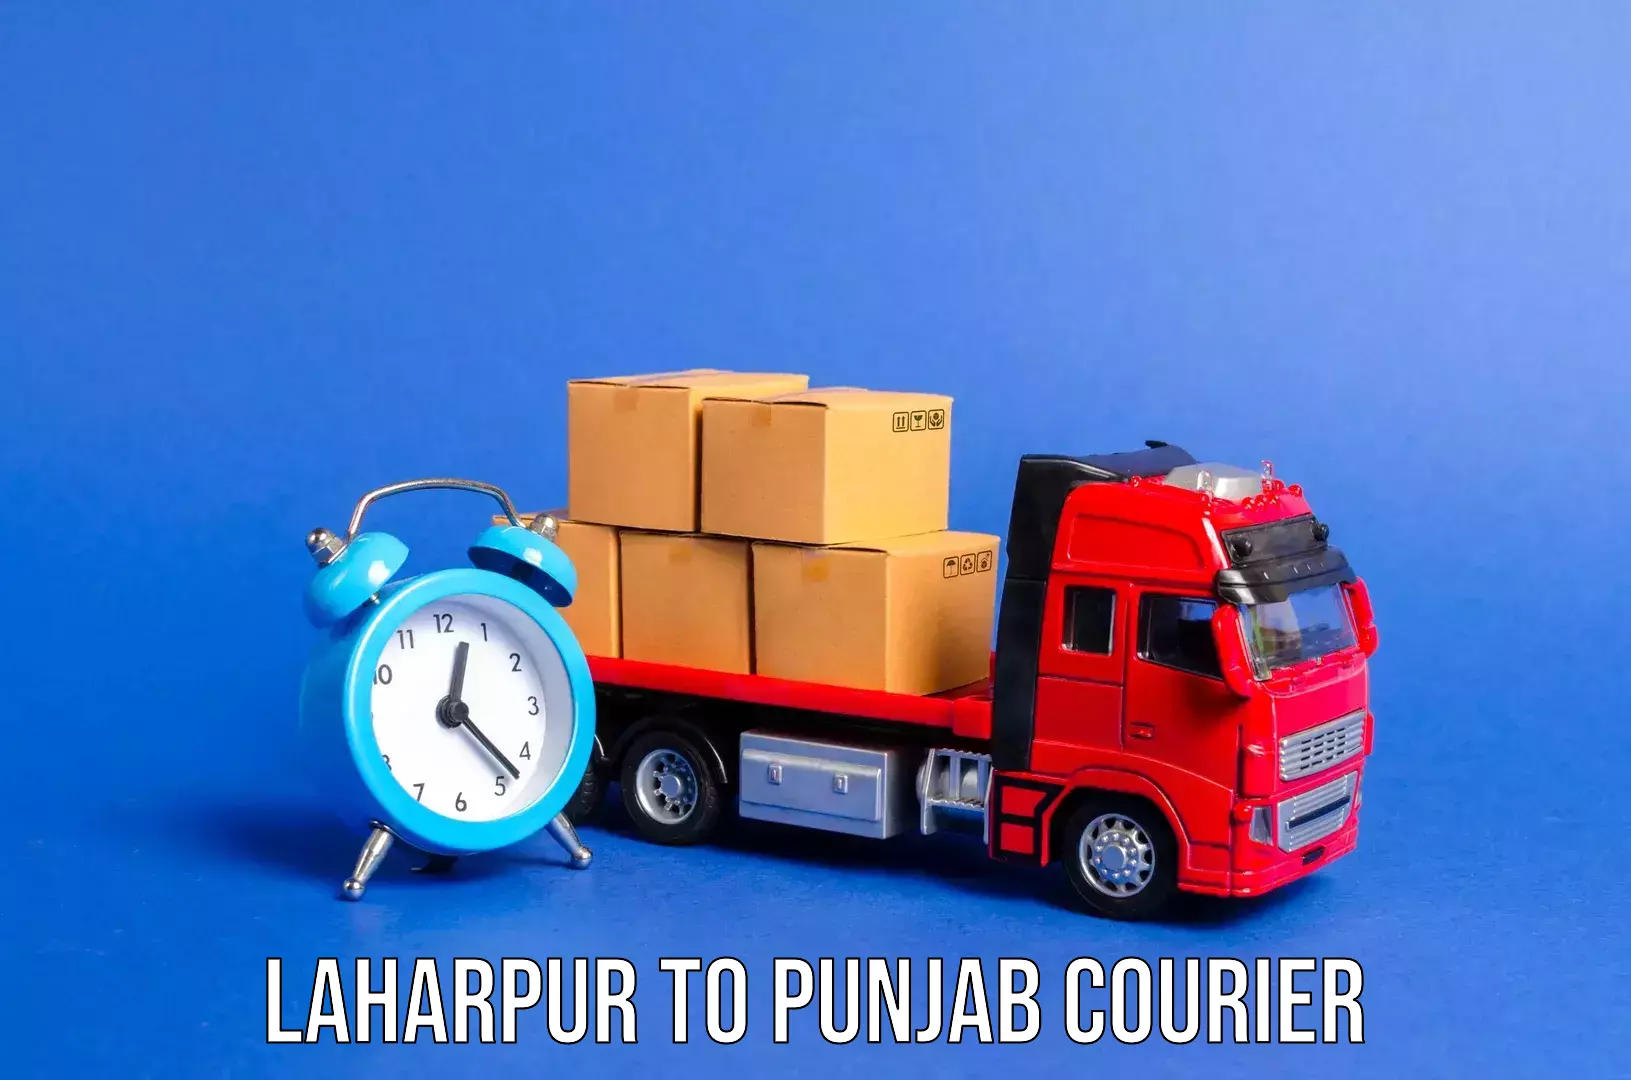 Luggage shipping service Laharpur to Talwara